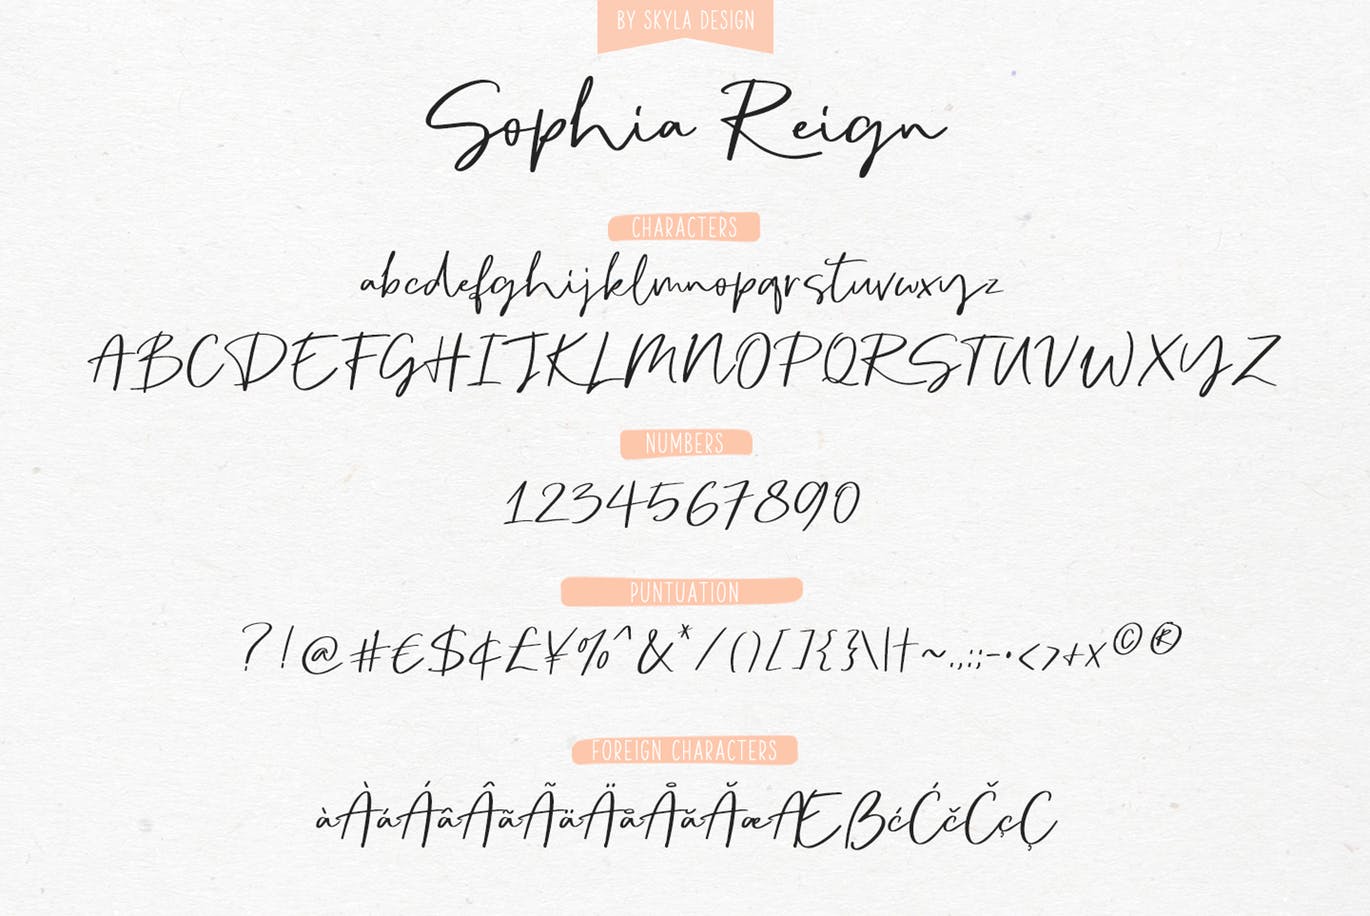 英文钢笔签名字体16图库精选&大写字母正楷字体16图库精选二重奏 Sophia Reign signature font duo插图(10)